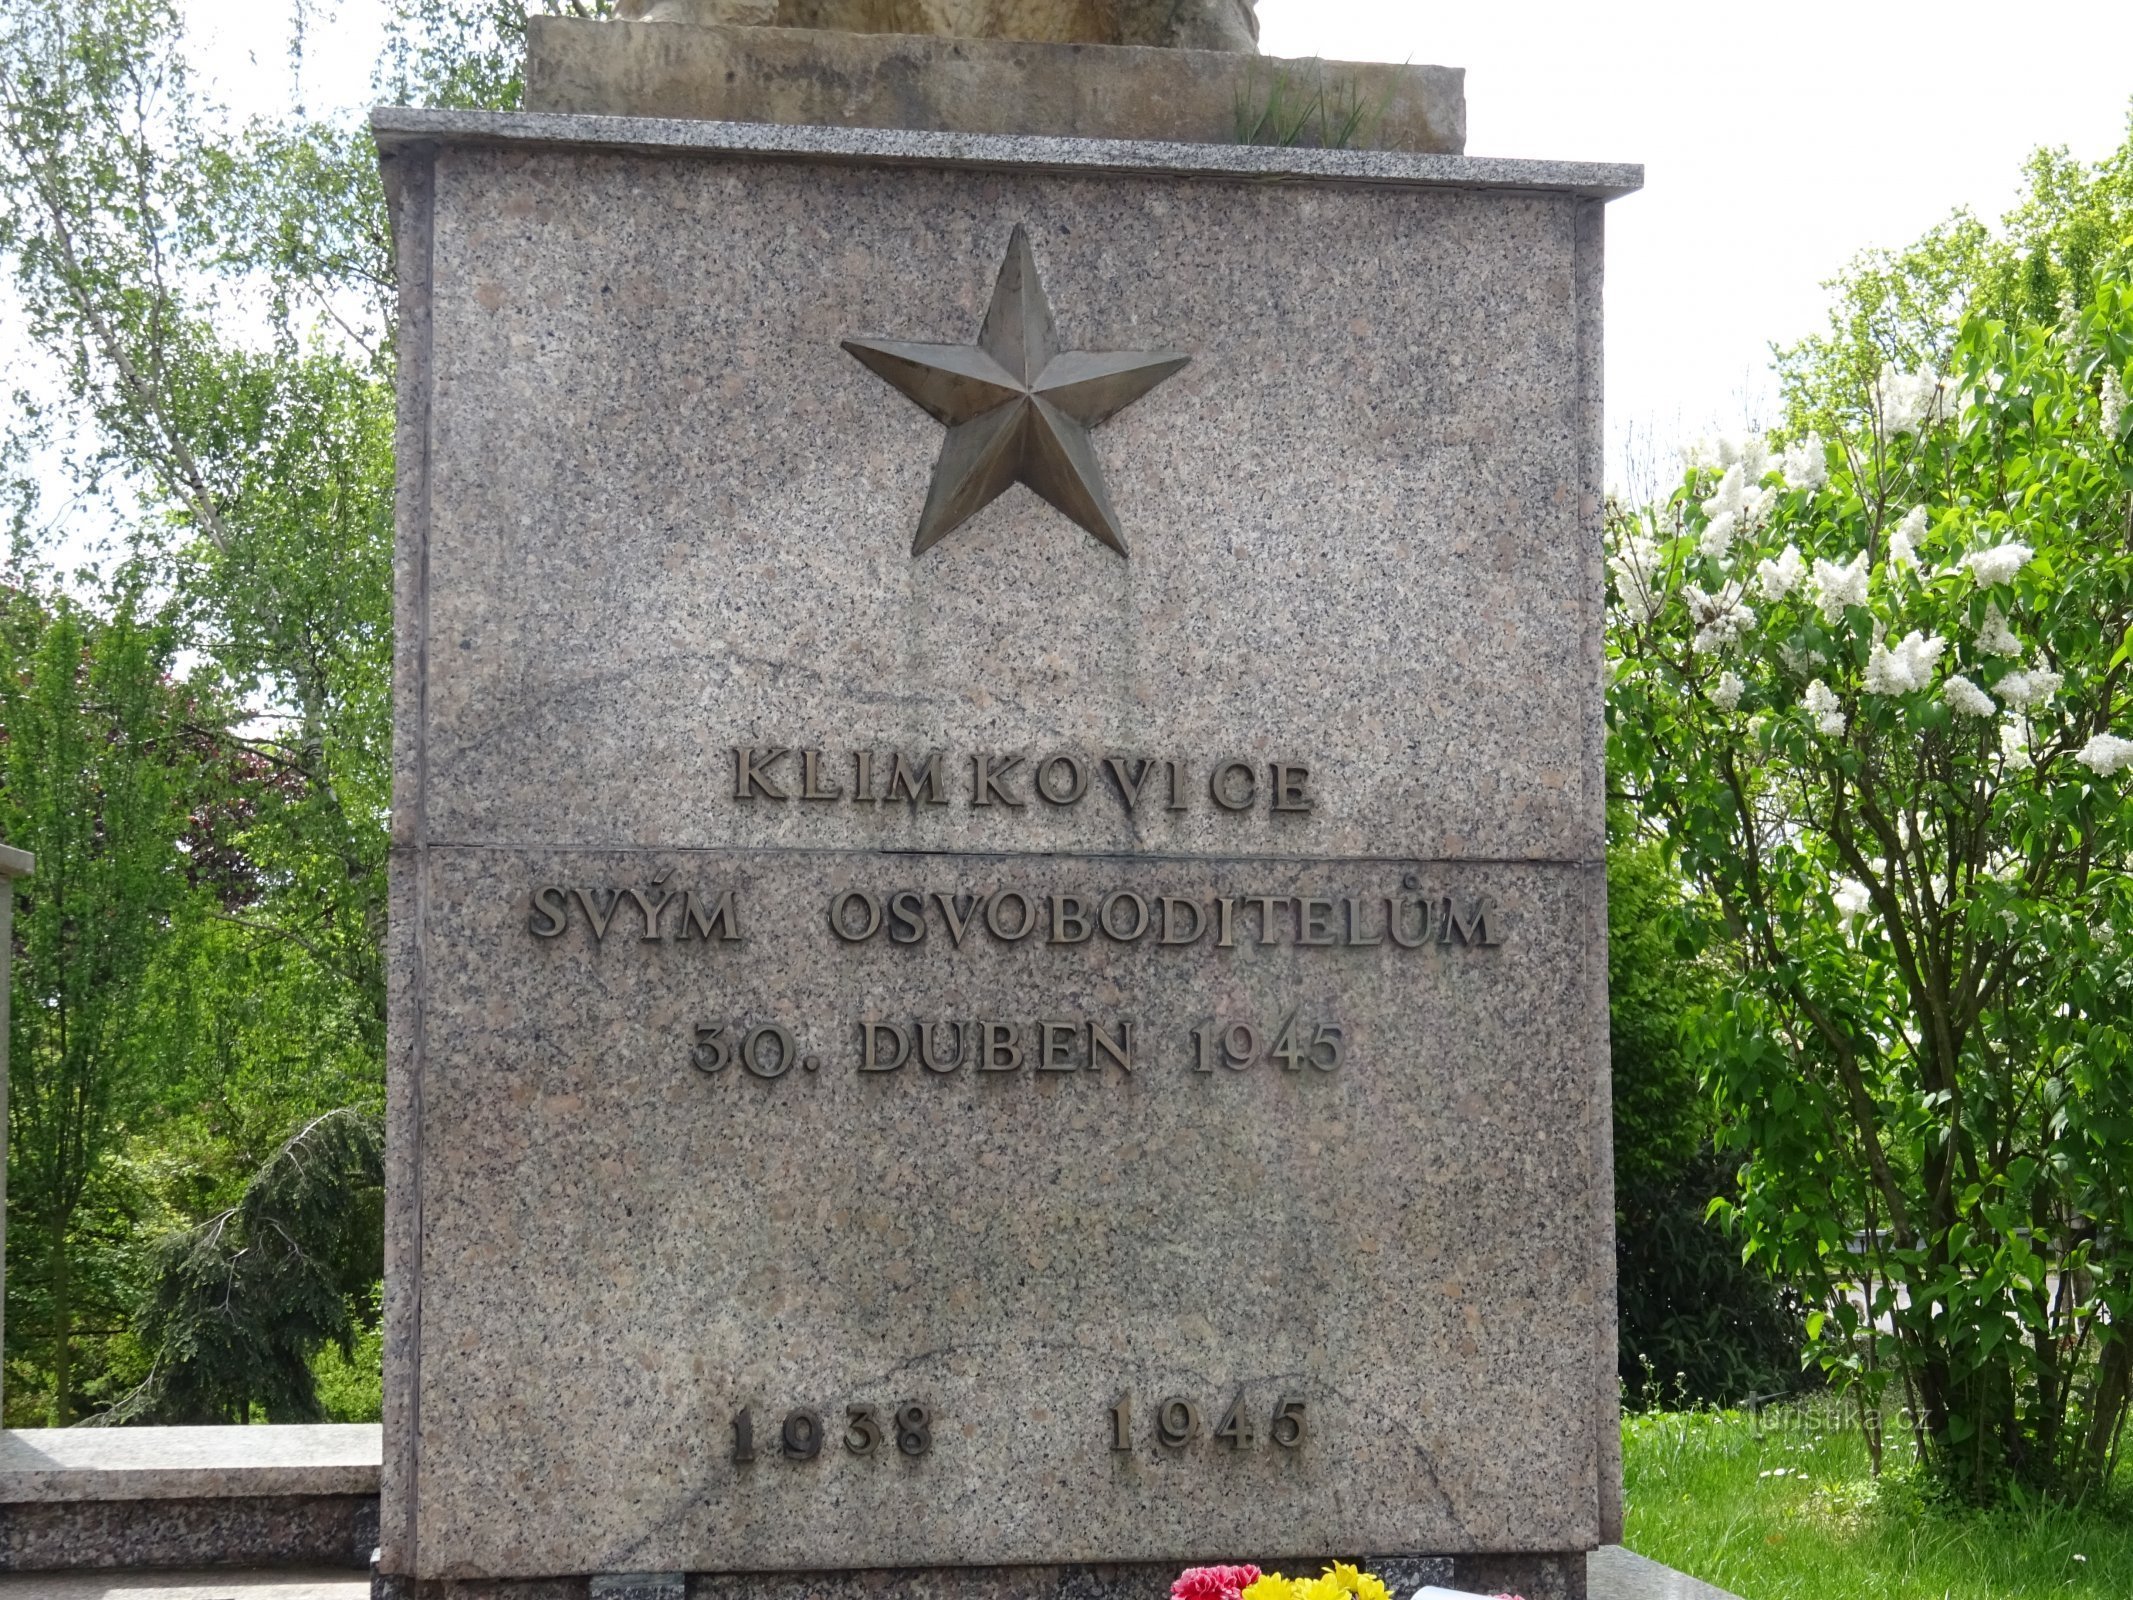 Klimkovice - monument II. världskrig